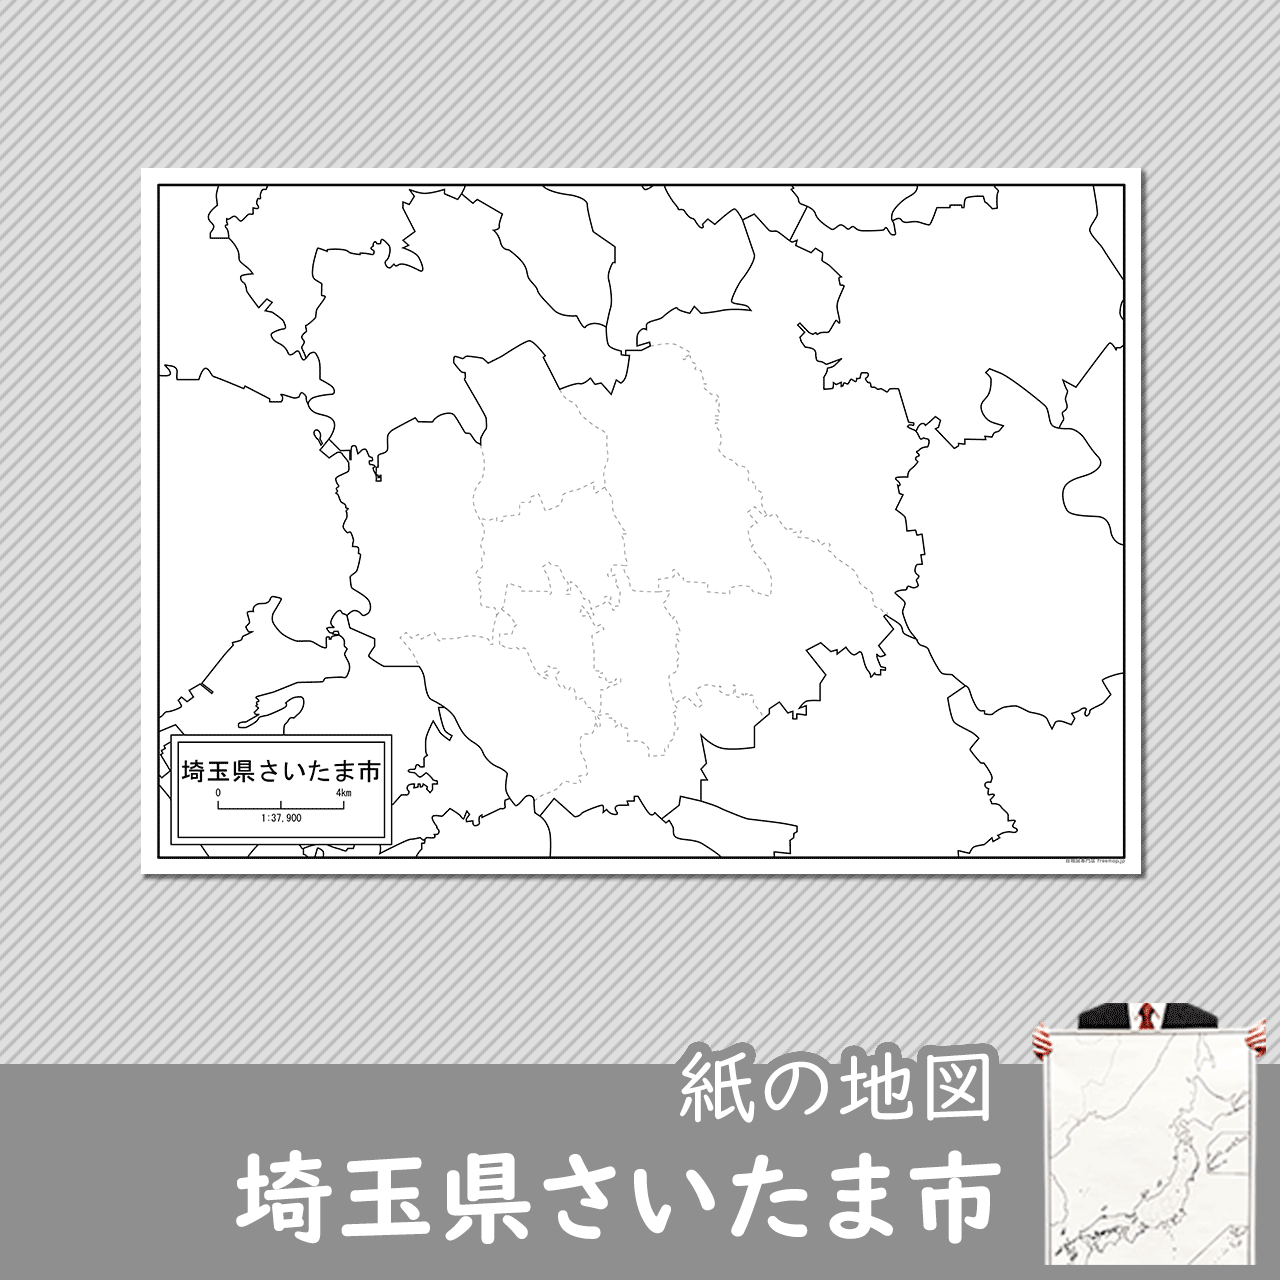 埼玉県さいたま市の紙の白地図のサムネイル